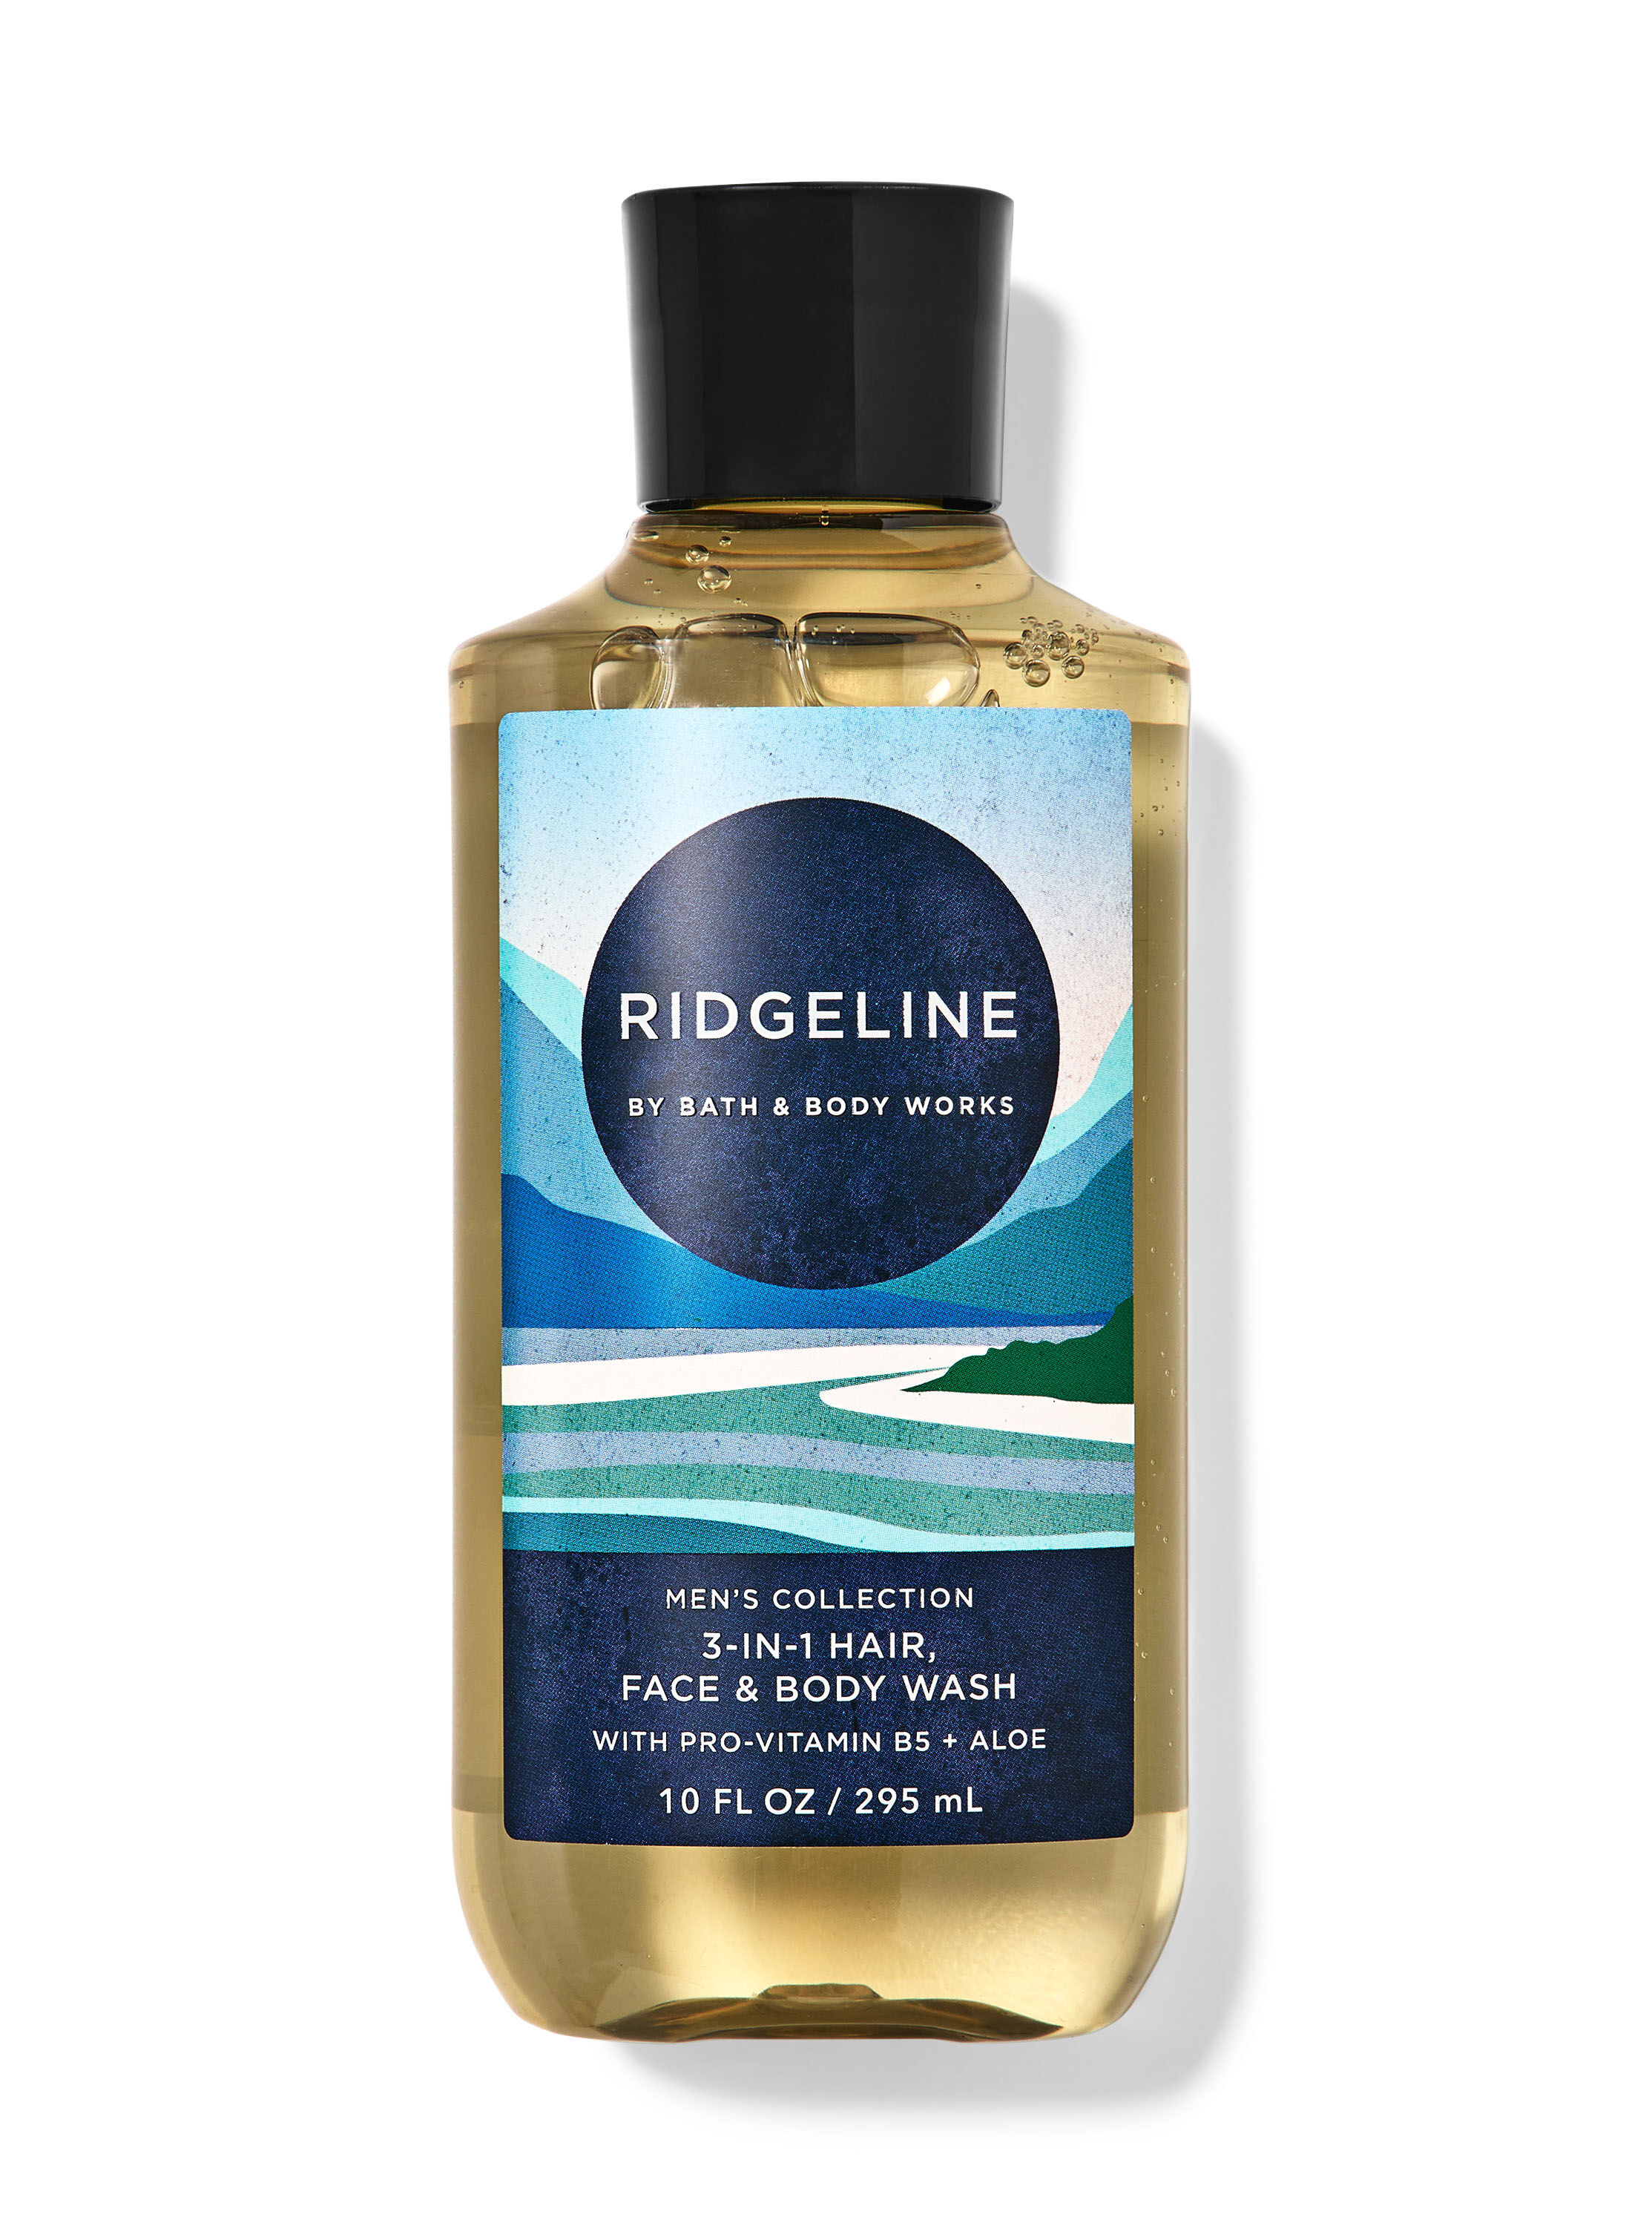 Ridgeline 3-in-1 Hair, Face & Body Wash